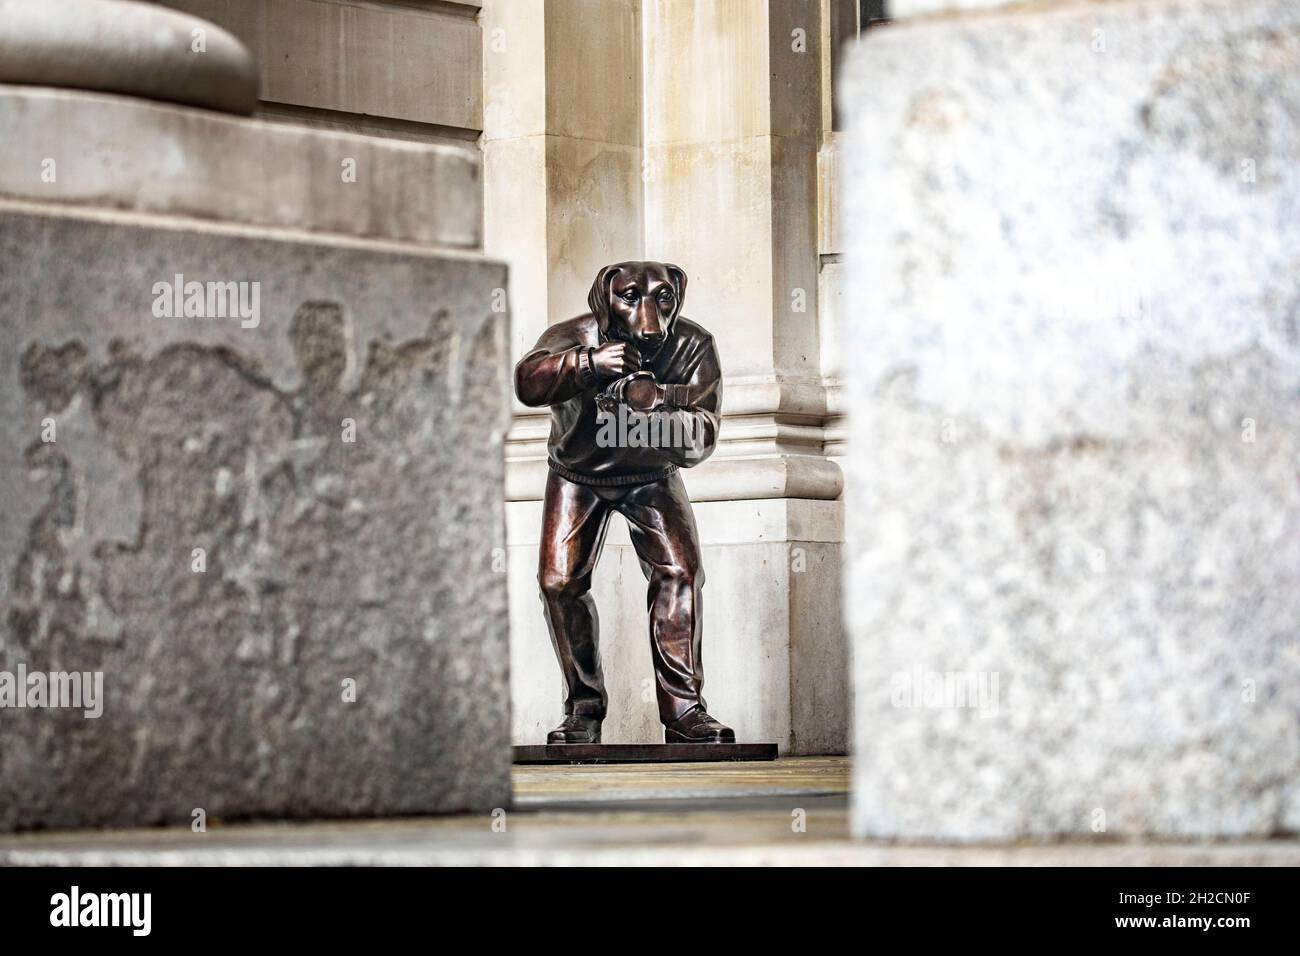 photos : statues du Ôpaparazzi dogsÕ près de la Banque d'Angleterre dans la ville de LondresPhoto de Gavin Rodgers/ Pixel8000 Banque D'Images